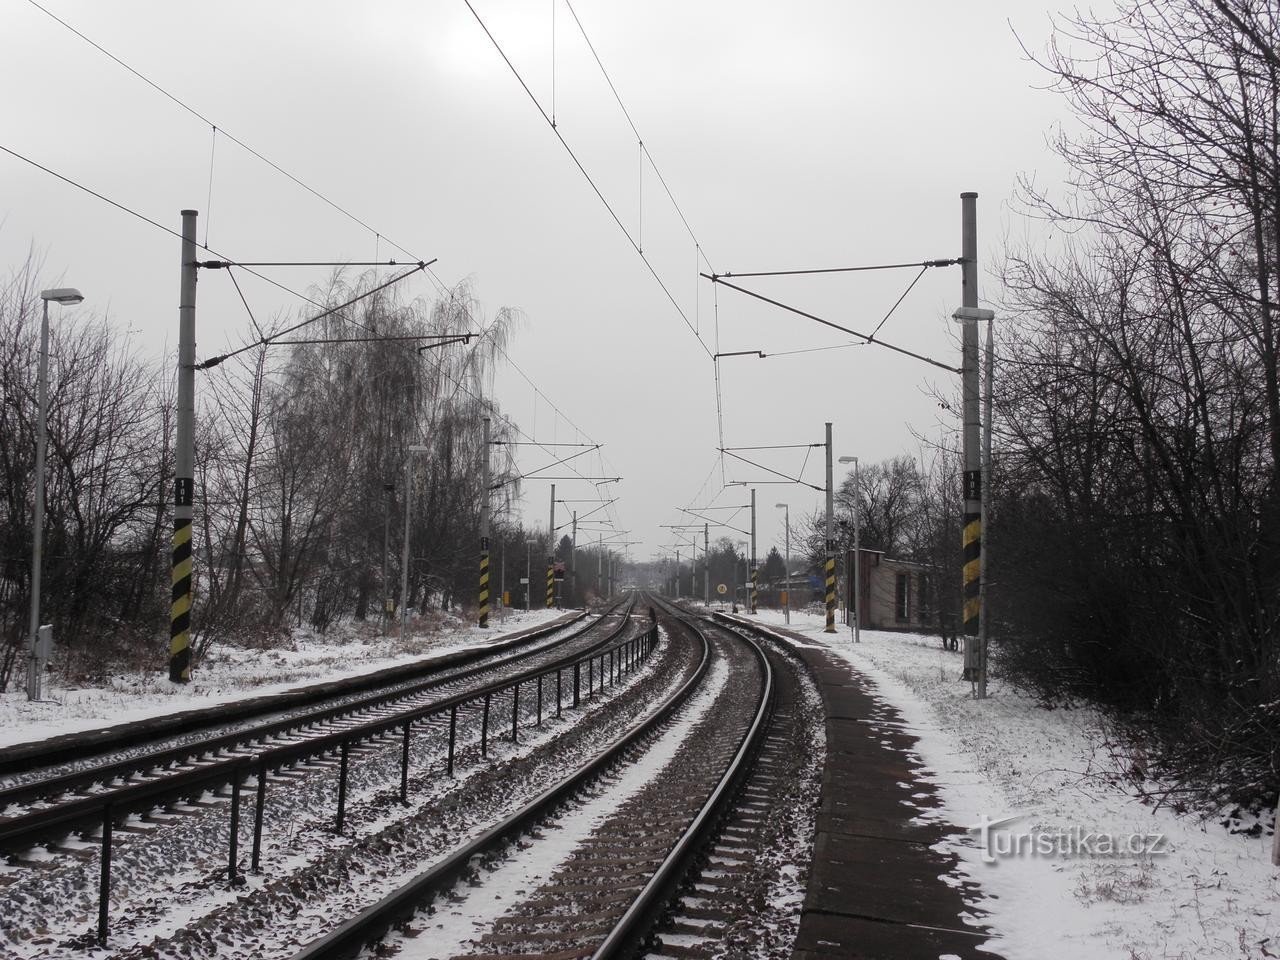 Ponětovice-jernbanen - 29.12.2010. januar XNUMX